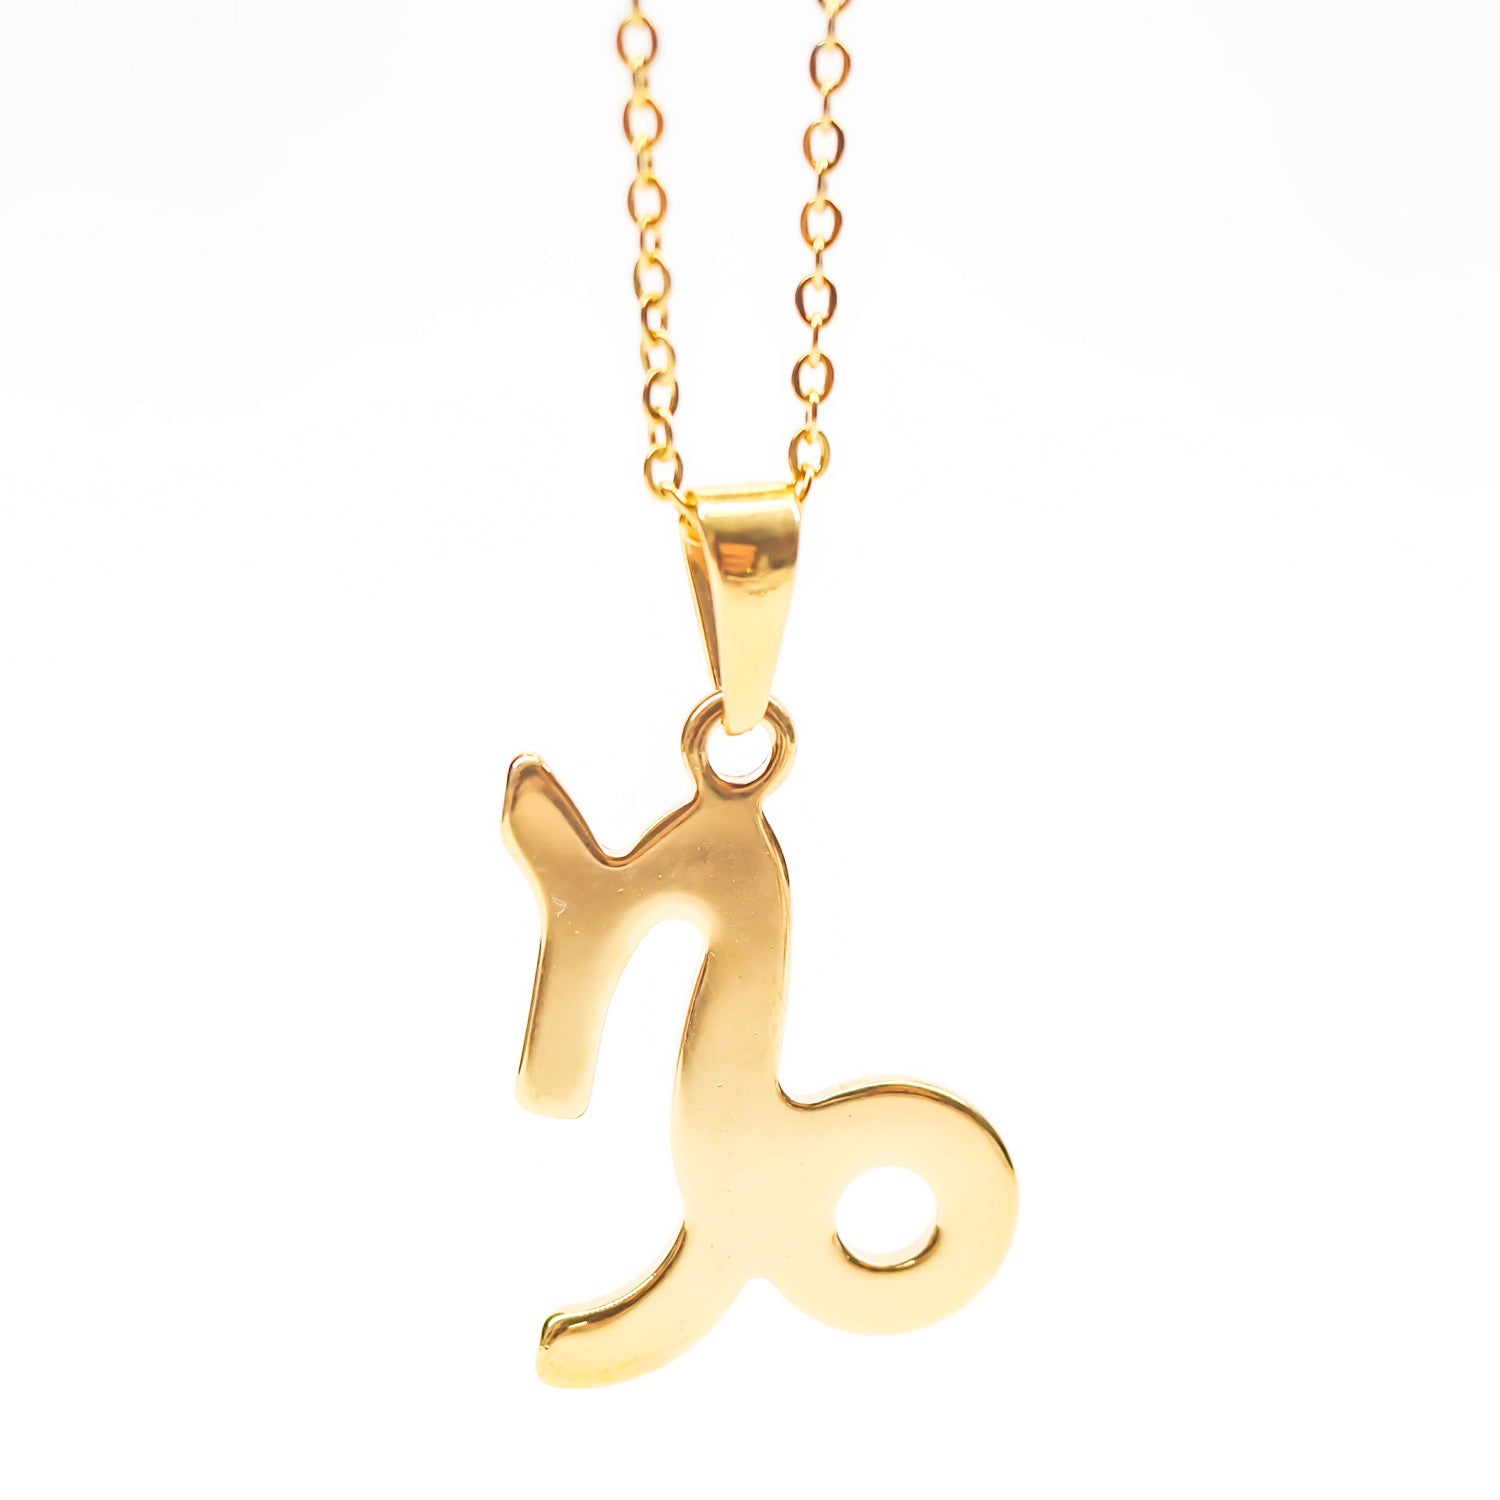 Colgante de acero inoxidable dorado con forma del signo del zodiaco Capricornio de 28mm